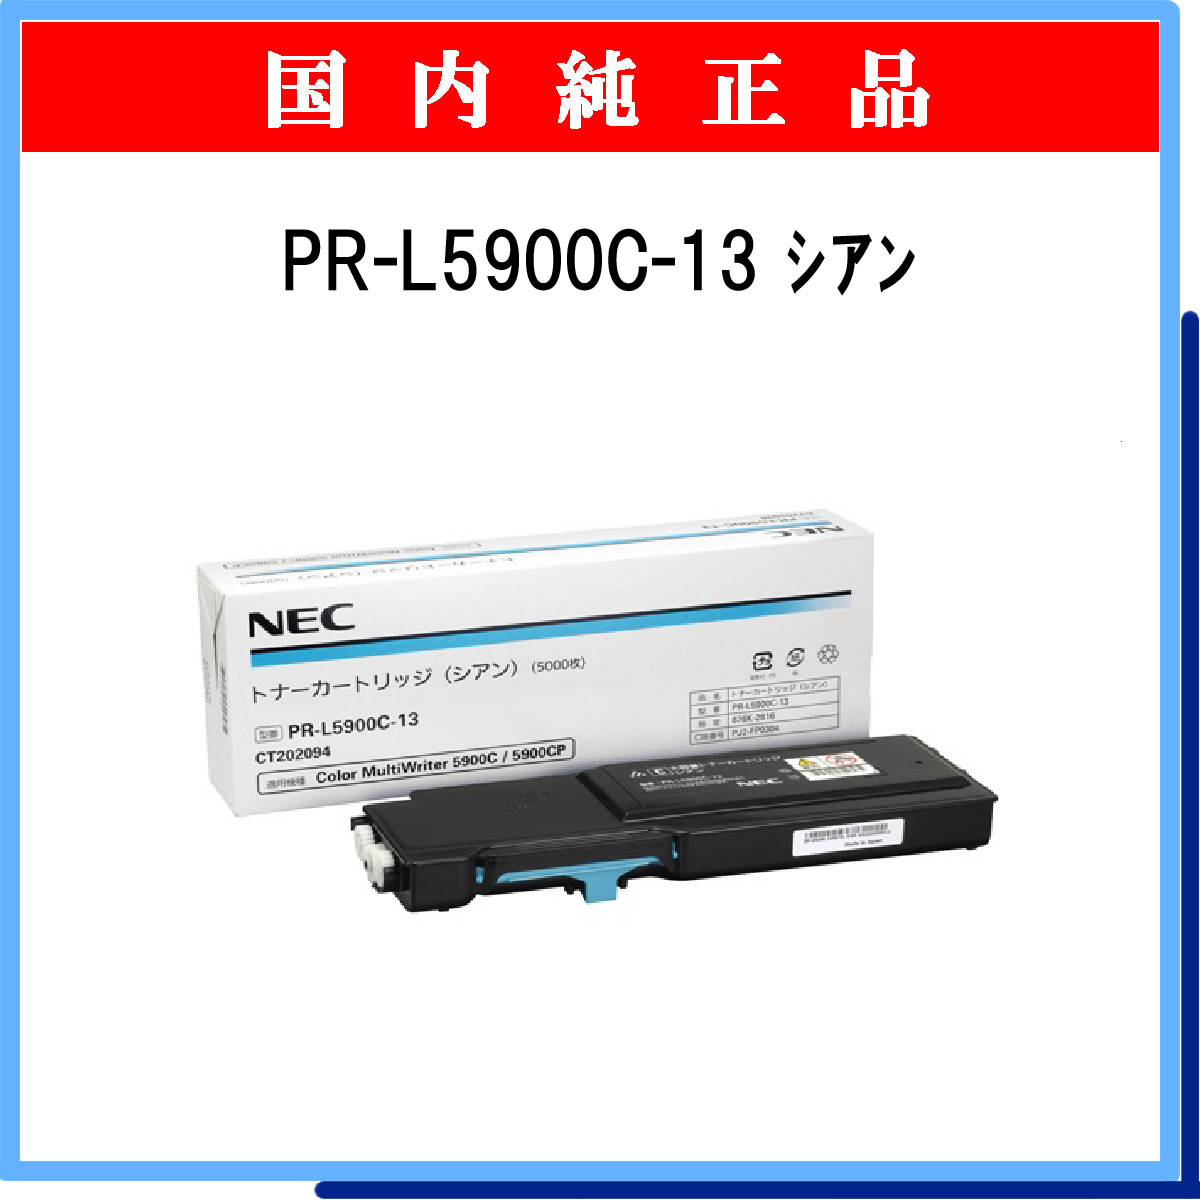 最愛 NEC トナーカートリッジ ブラック PRL5900C14 PR-L5900C-14